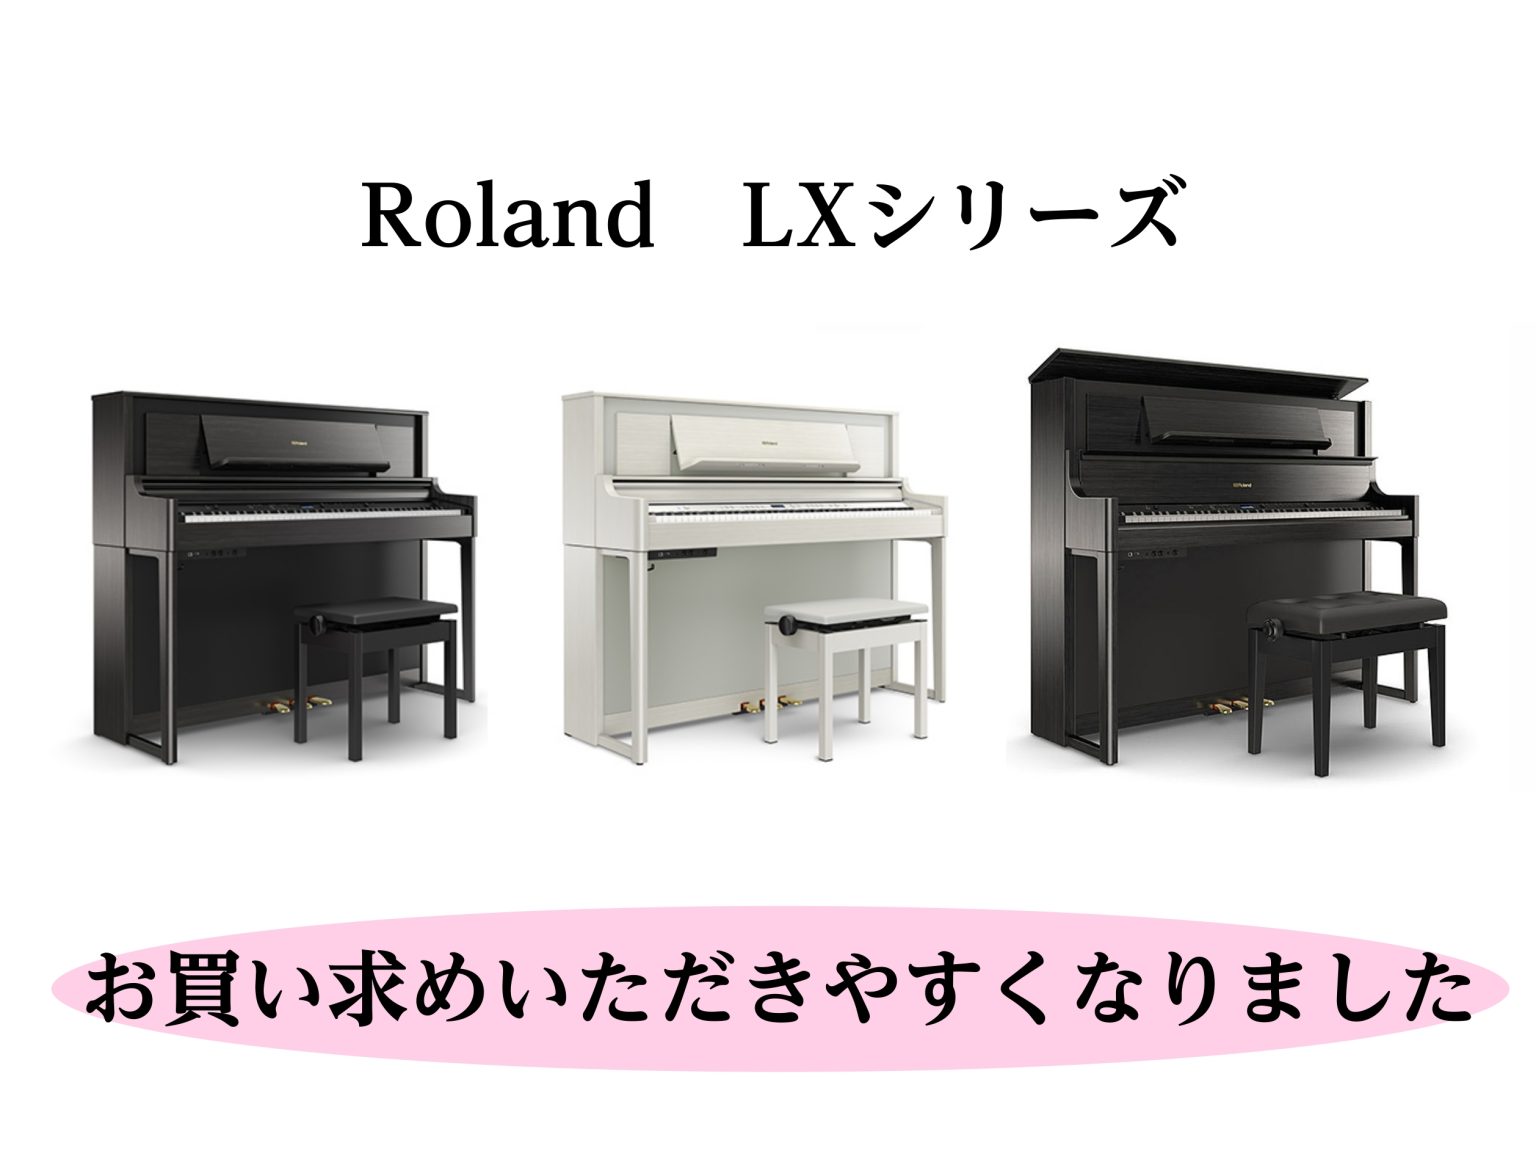 島村楽器ららぽーと名古屋みなとアクルス店、電子ピアノ担当の杉本です。この度、Rolandの人気機種 LXシリーズ が大変お求めやすいお値段での販売となりました！この機会にいかがでしょうか。皆様のご来店を心よりお待ちしております。 CONTENTSLXシリーズ【電子ピアノフェア】「HAPPY MUSI […]